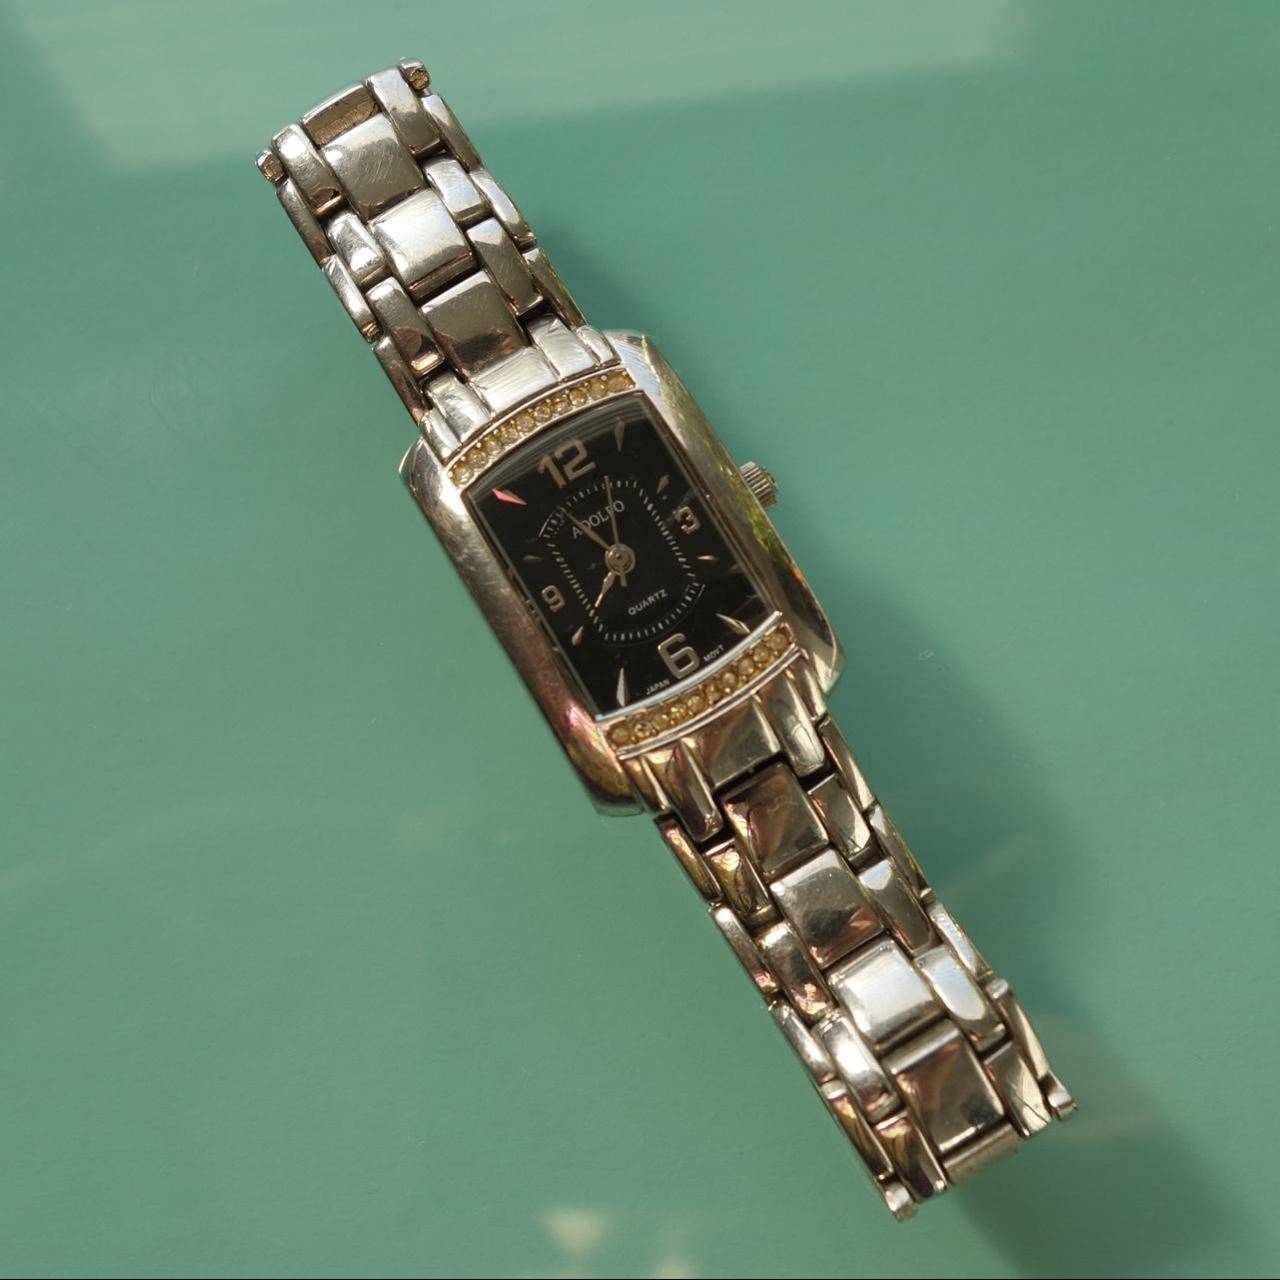 ADOLFO UNISEX 32MM Round Gold Tone Quartz Watch Black Dial $14.50 - PicClick